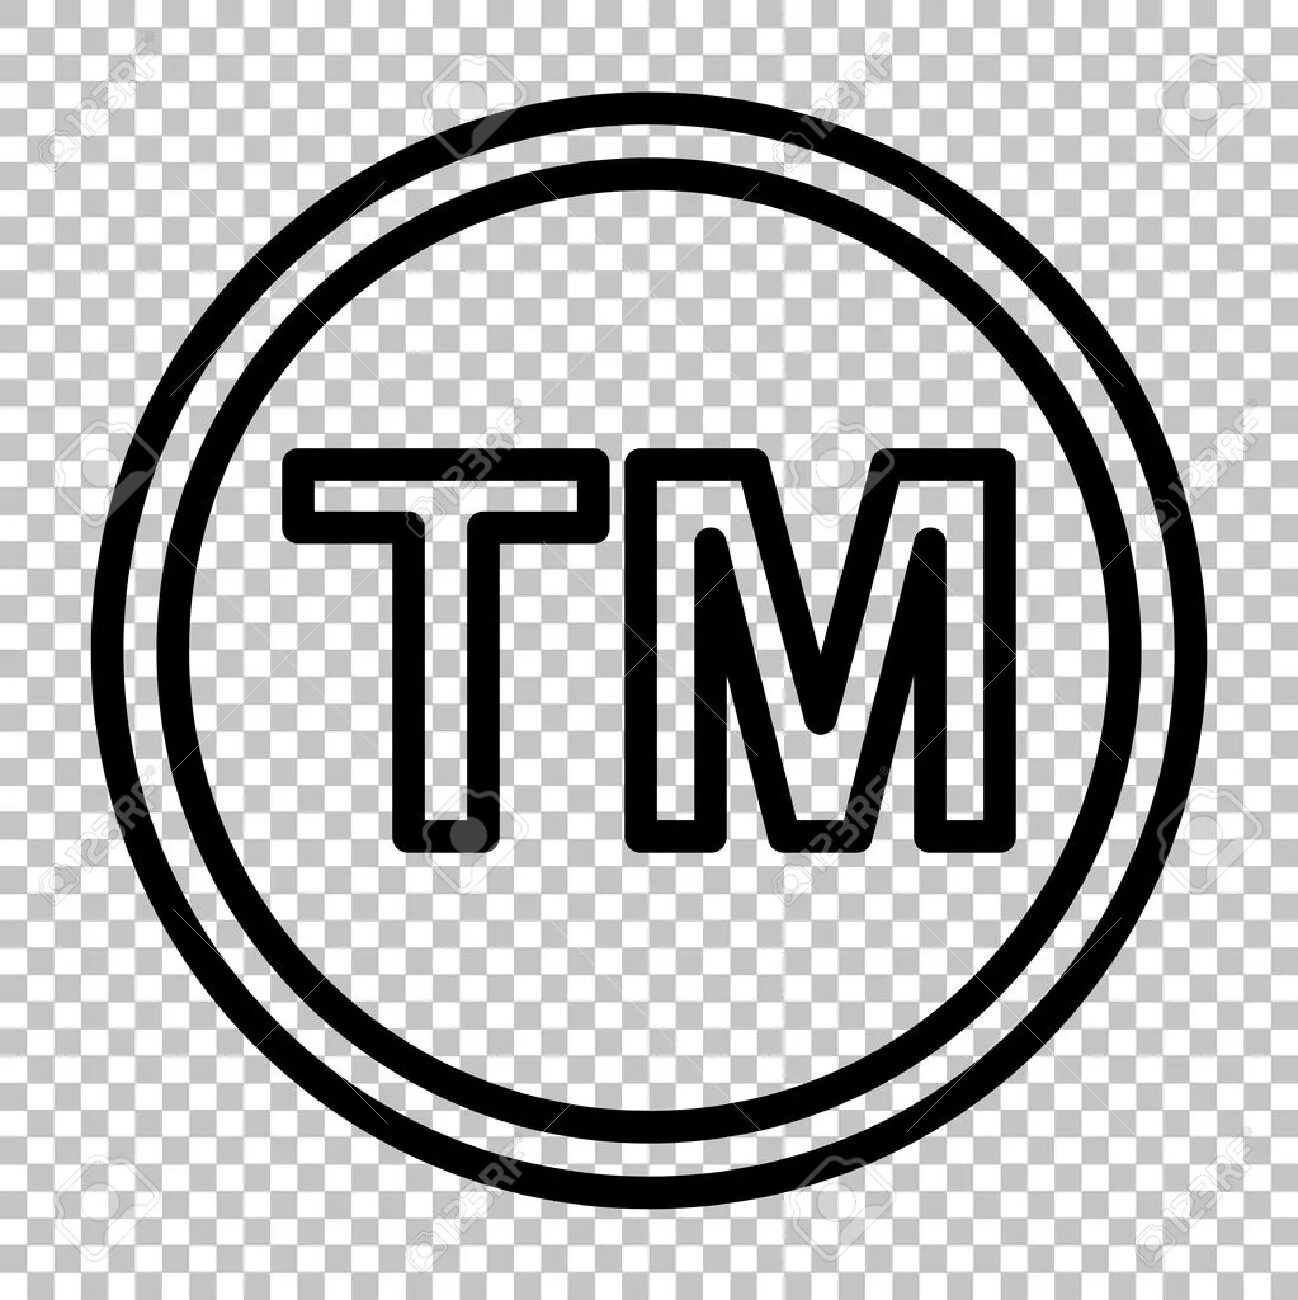 Товарный знак TM. Торговая марка символ. ТМ торговая марка символ. Значок торгового знака.